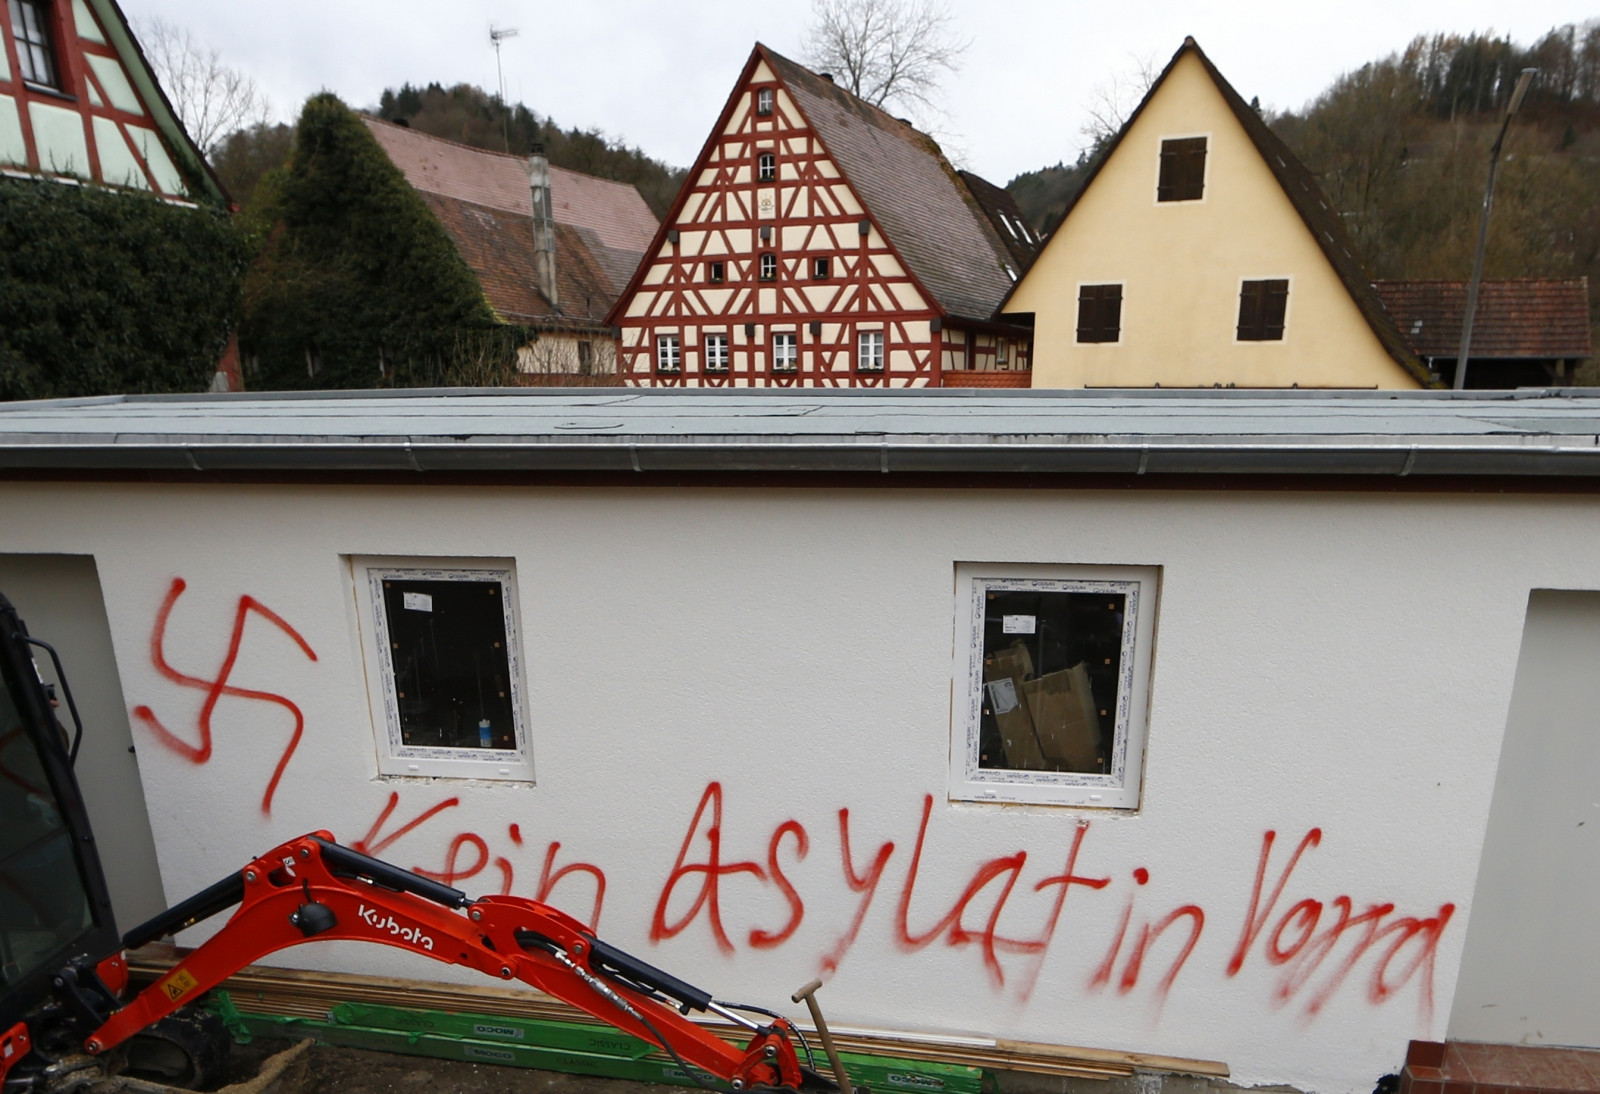 Σχεδόν καθημερινές οι επιθέσεις σε κέντρα προσφύγων στη Γερμανία